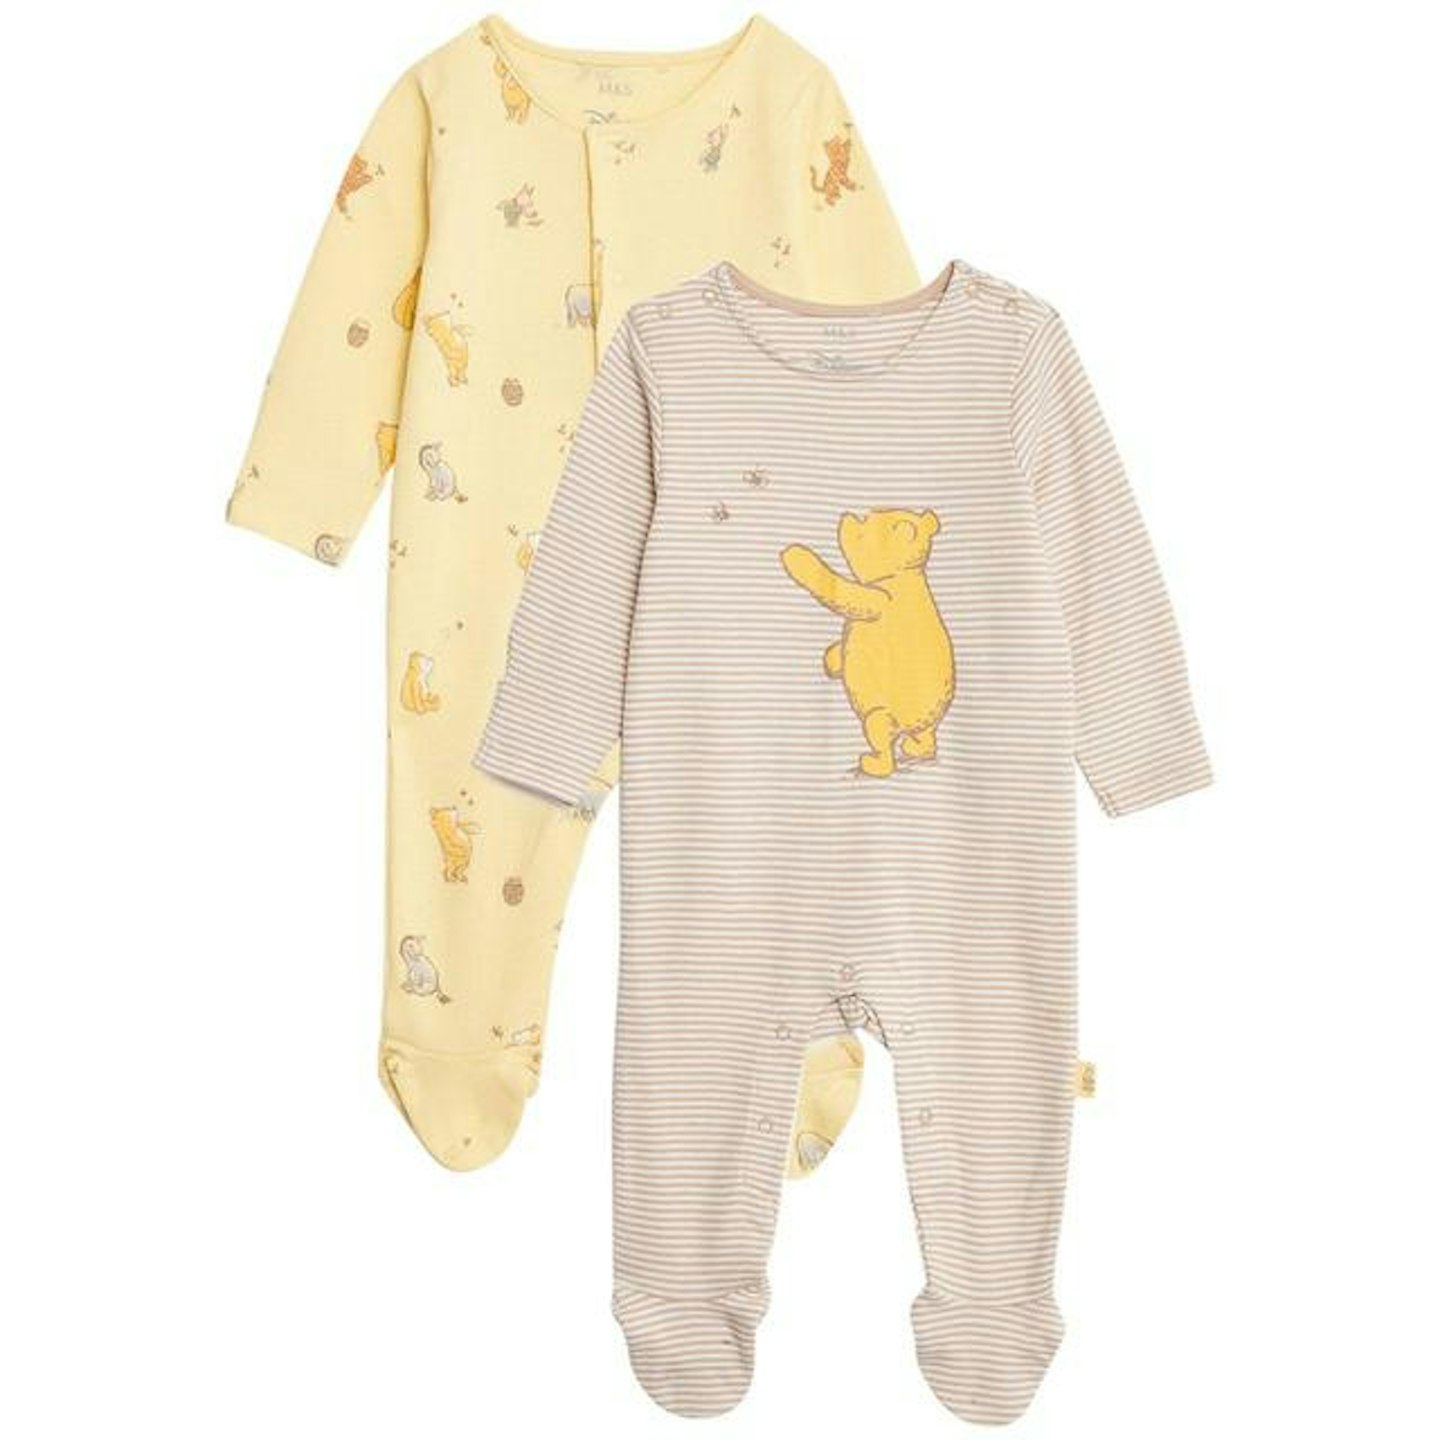 M&S Winnie the Pooh sleepsuit